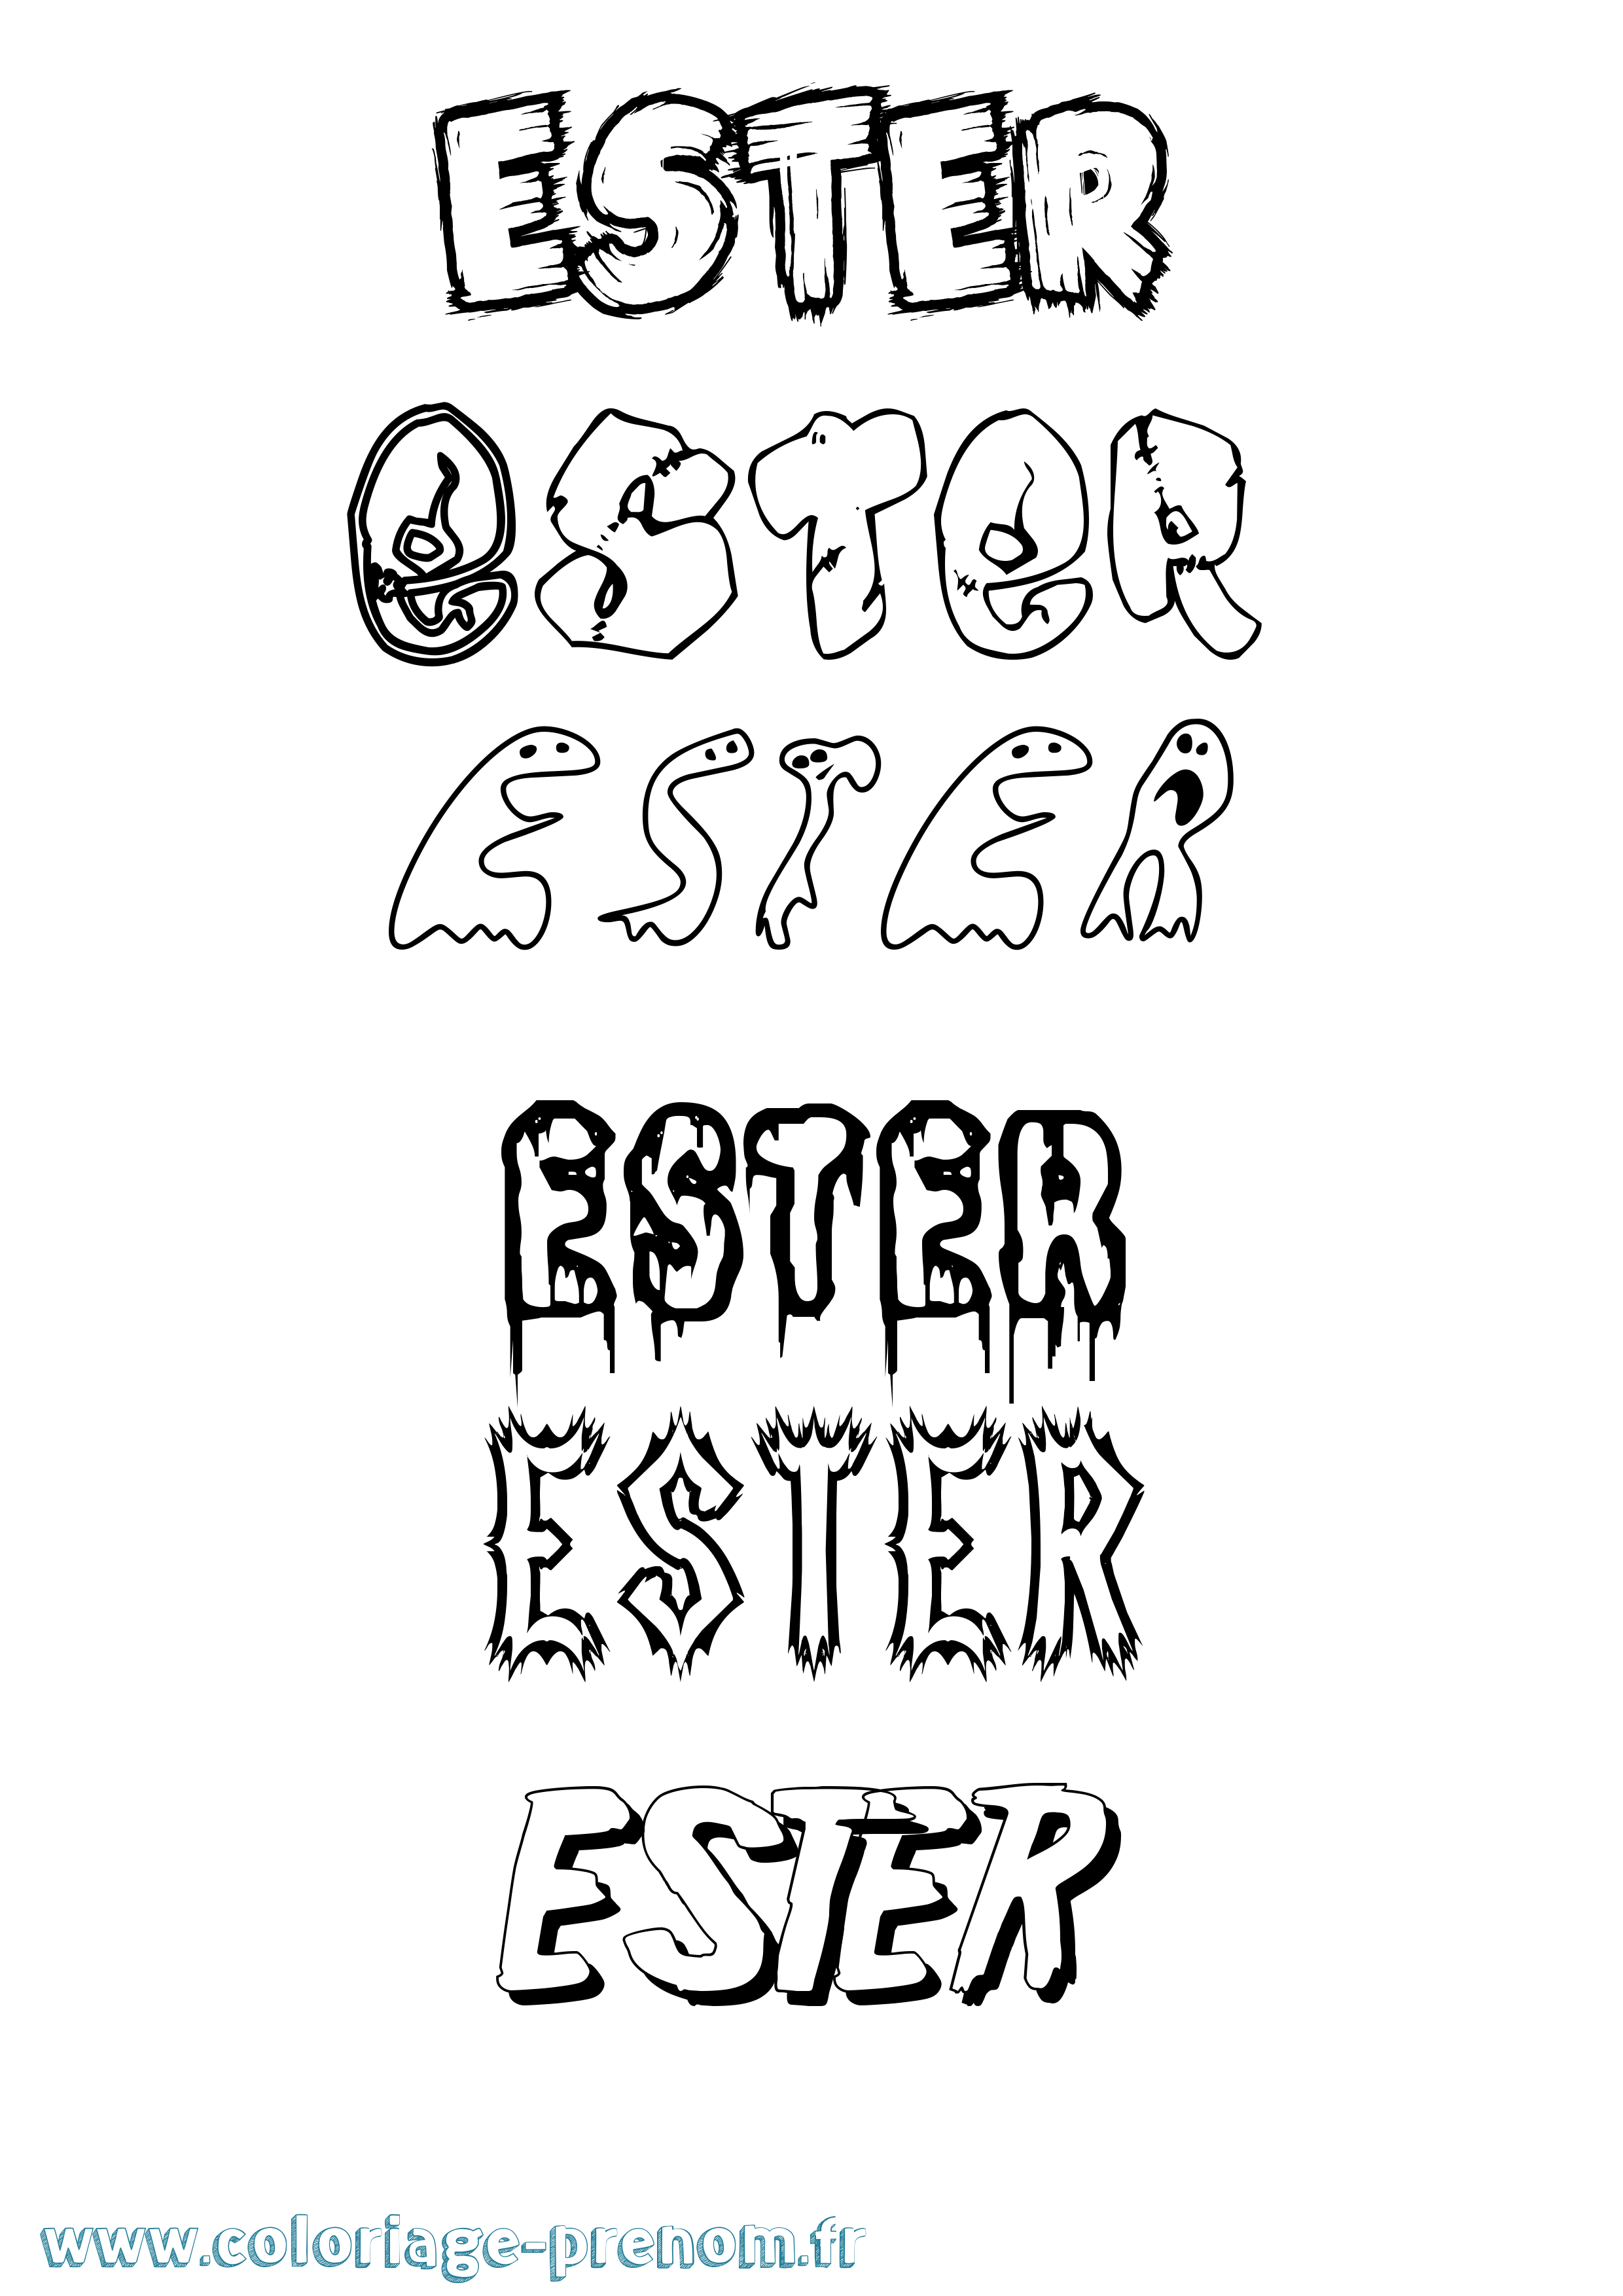 Coloriage prénom Ester Frisson